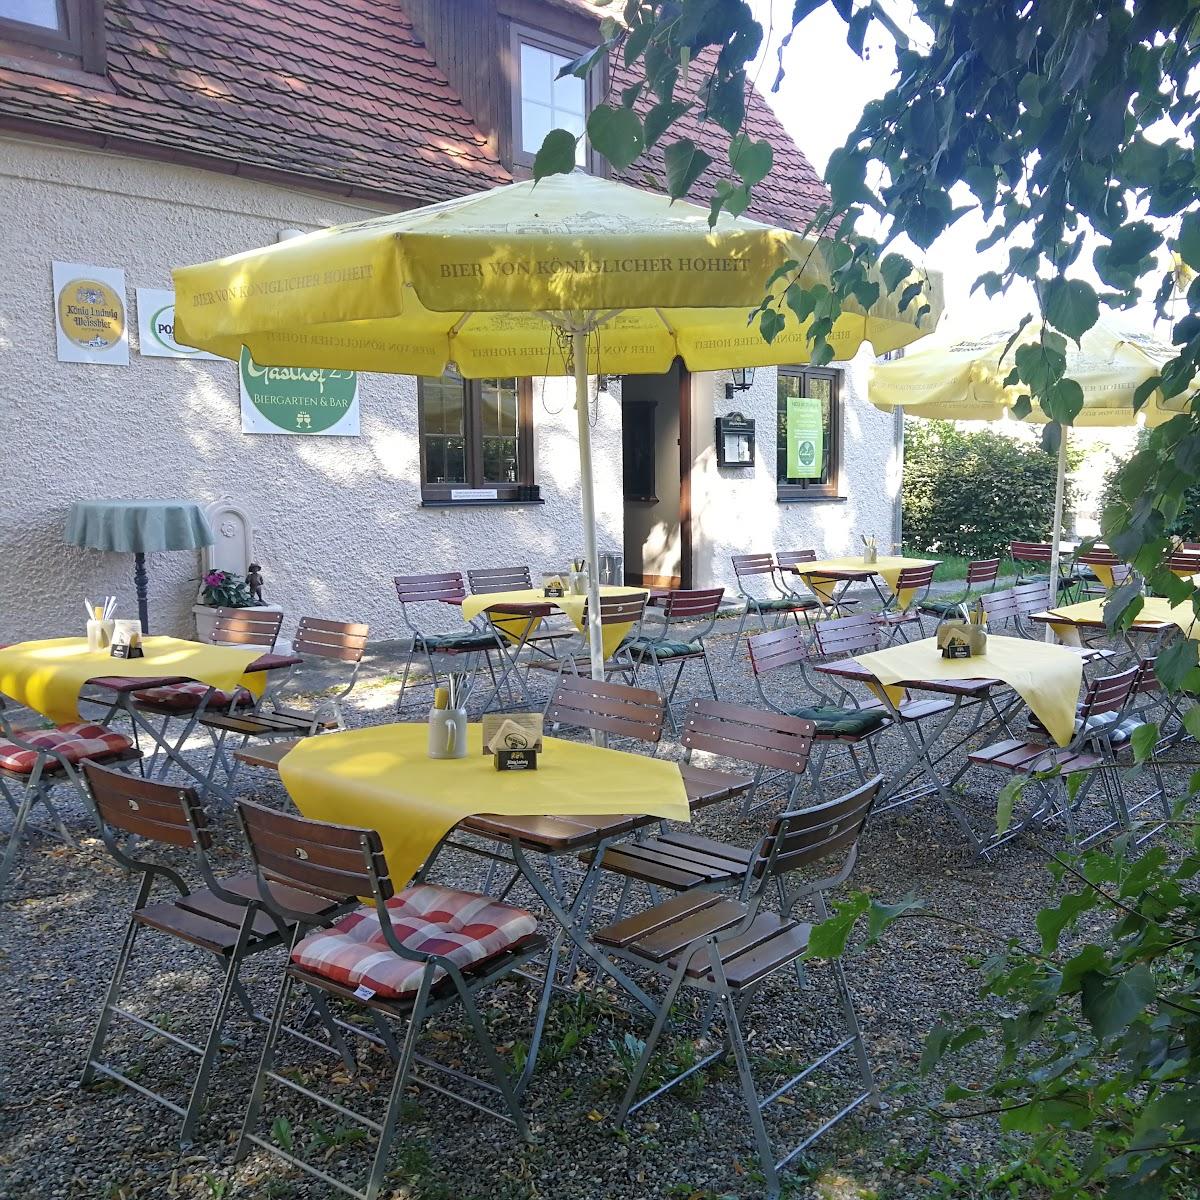 Restaurant "Gasthof 23 - Biergarten & Bar" in Thannhausen